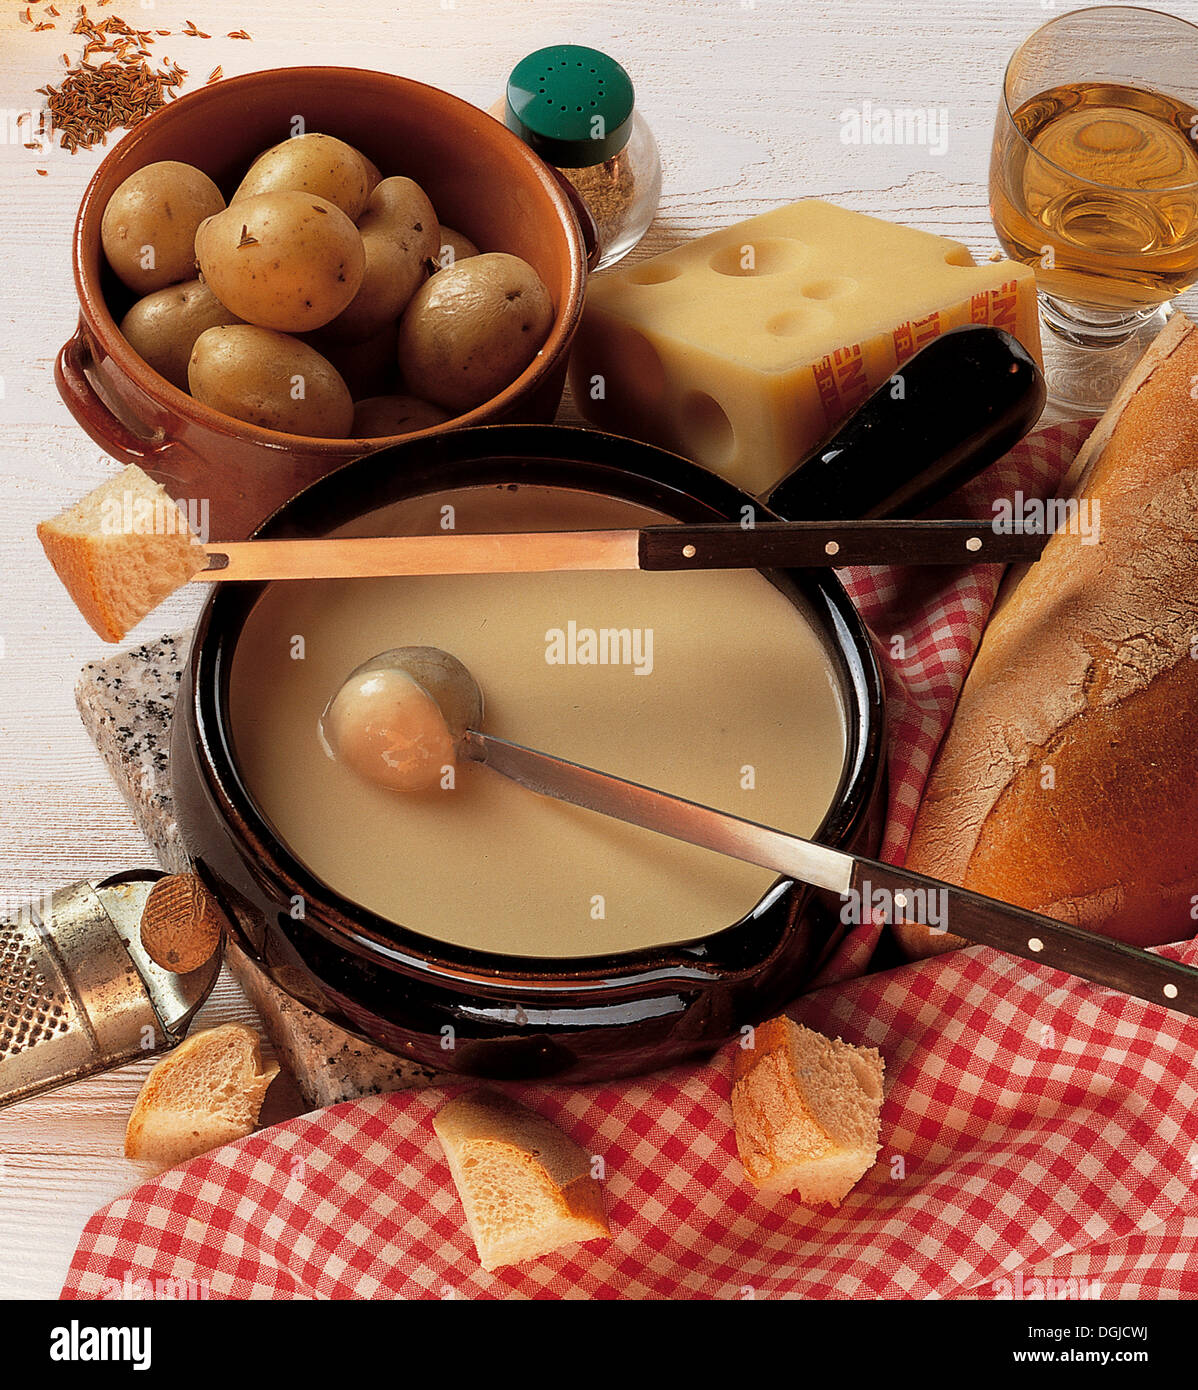 Genevan cheese fondue, Switzerland. Stock Photo